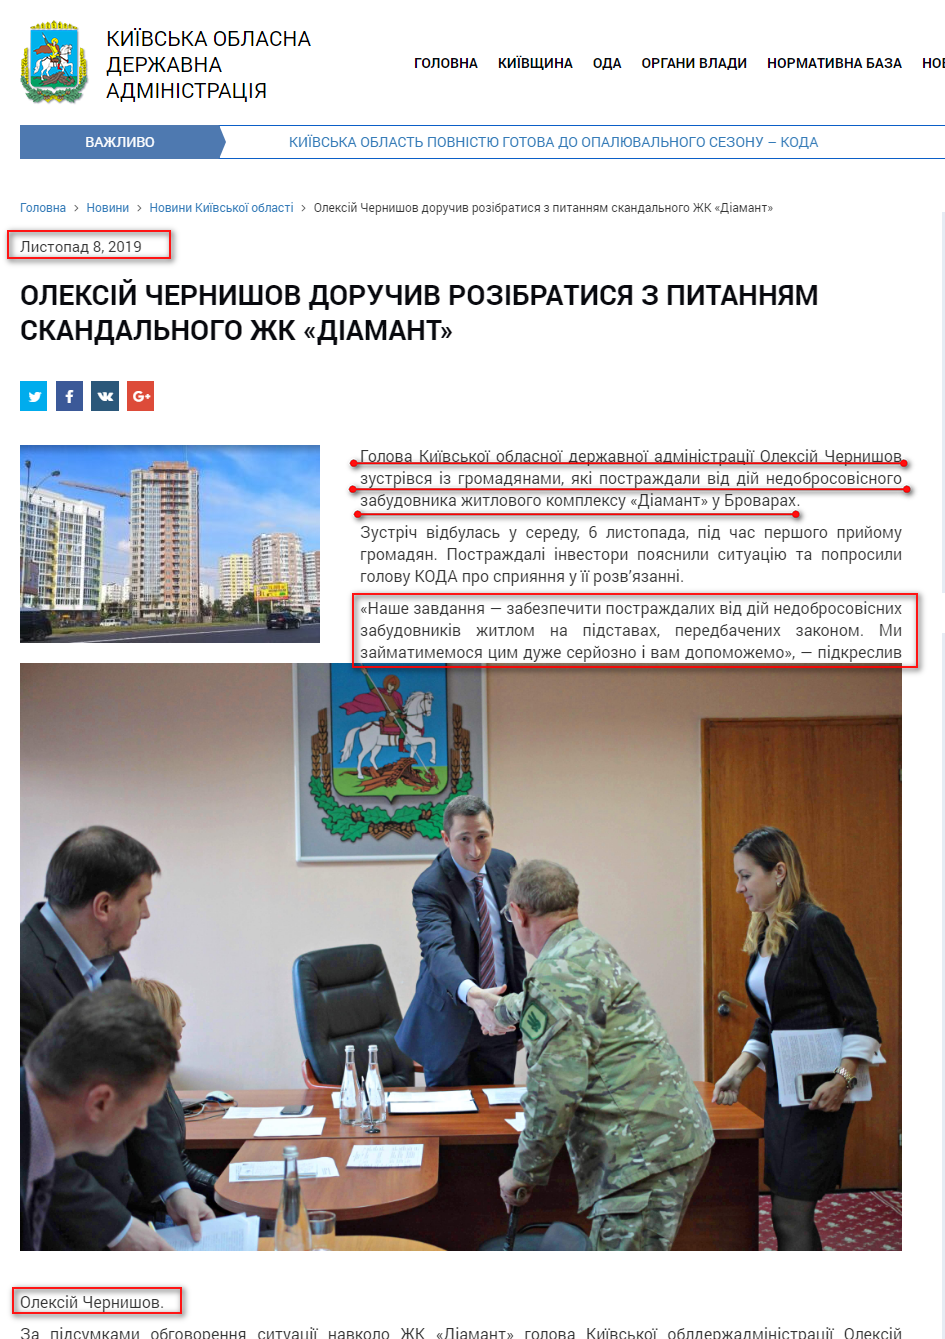 http://koda.gov.ua/news/oleksiy-chernishov-doruchiv-rozibratis/